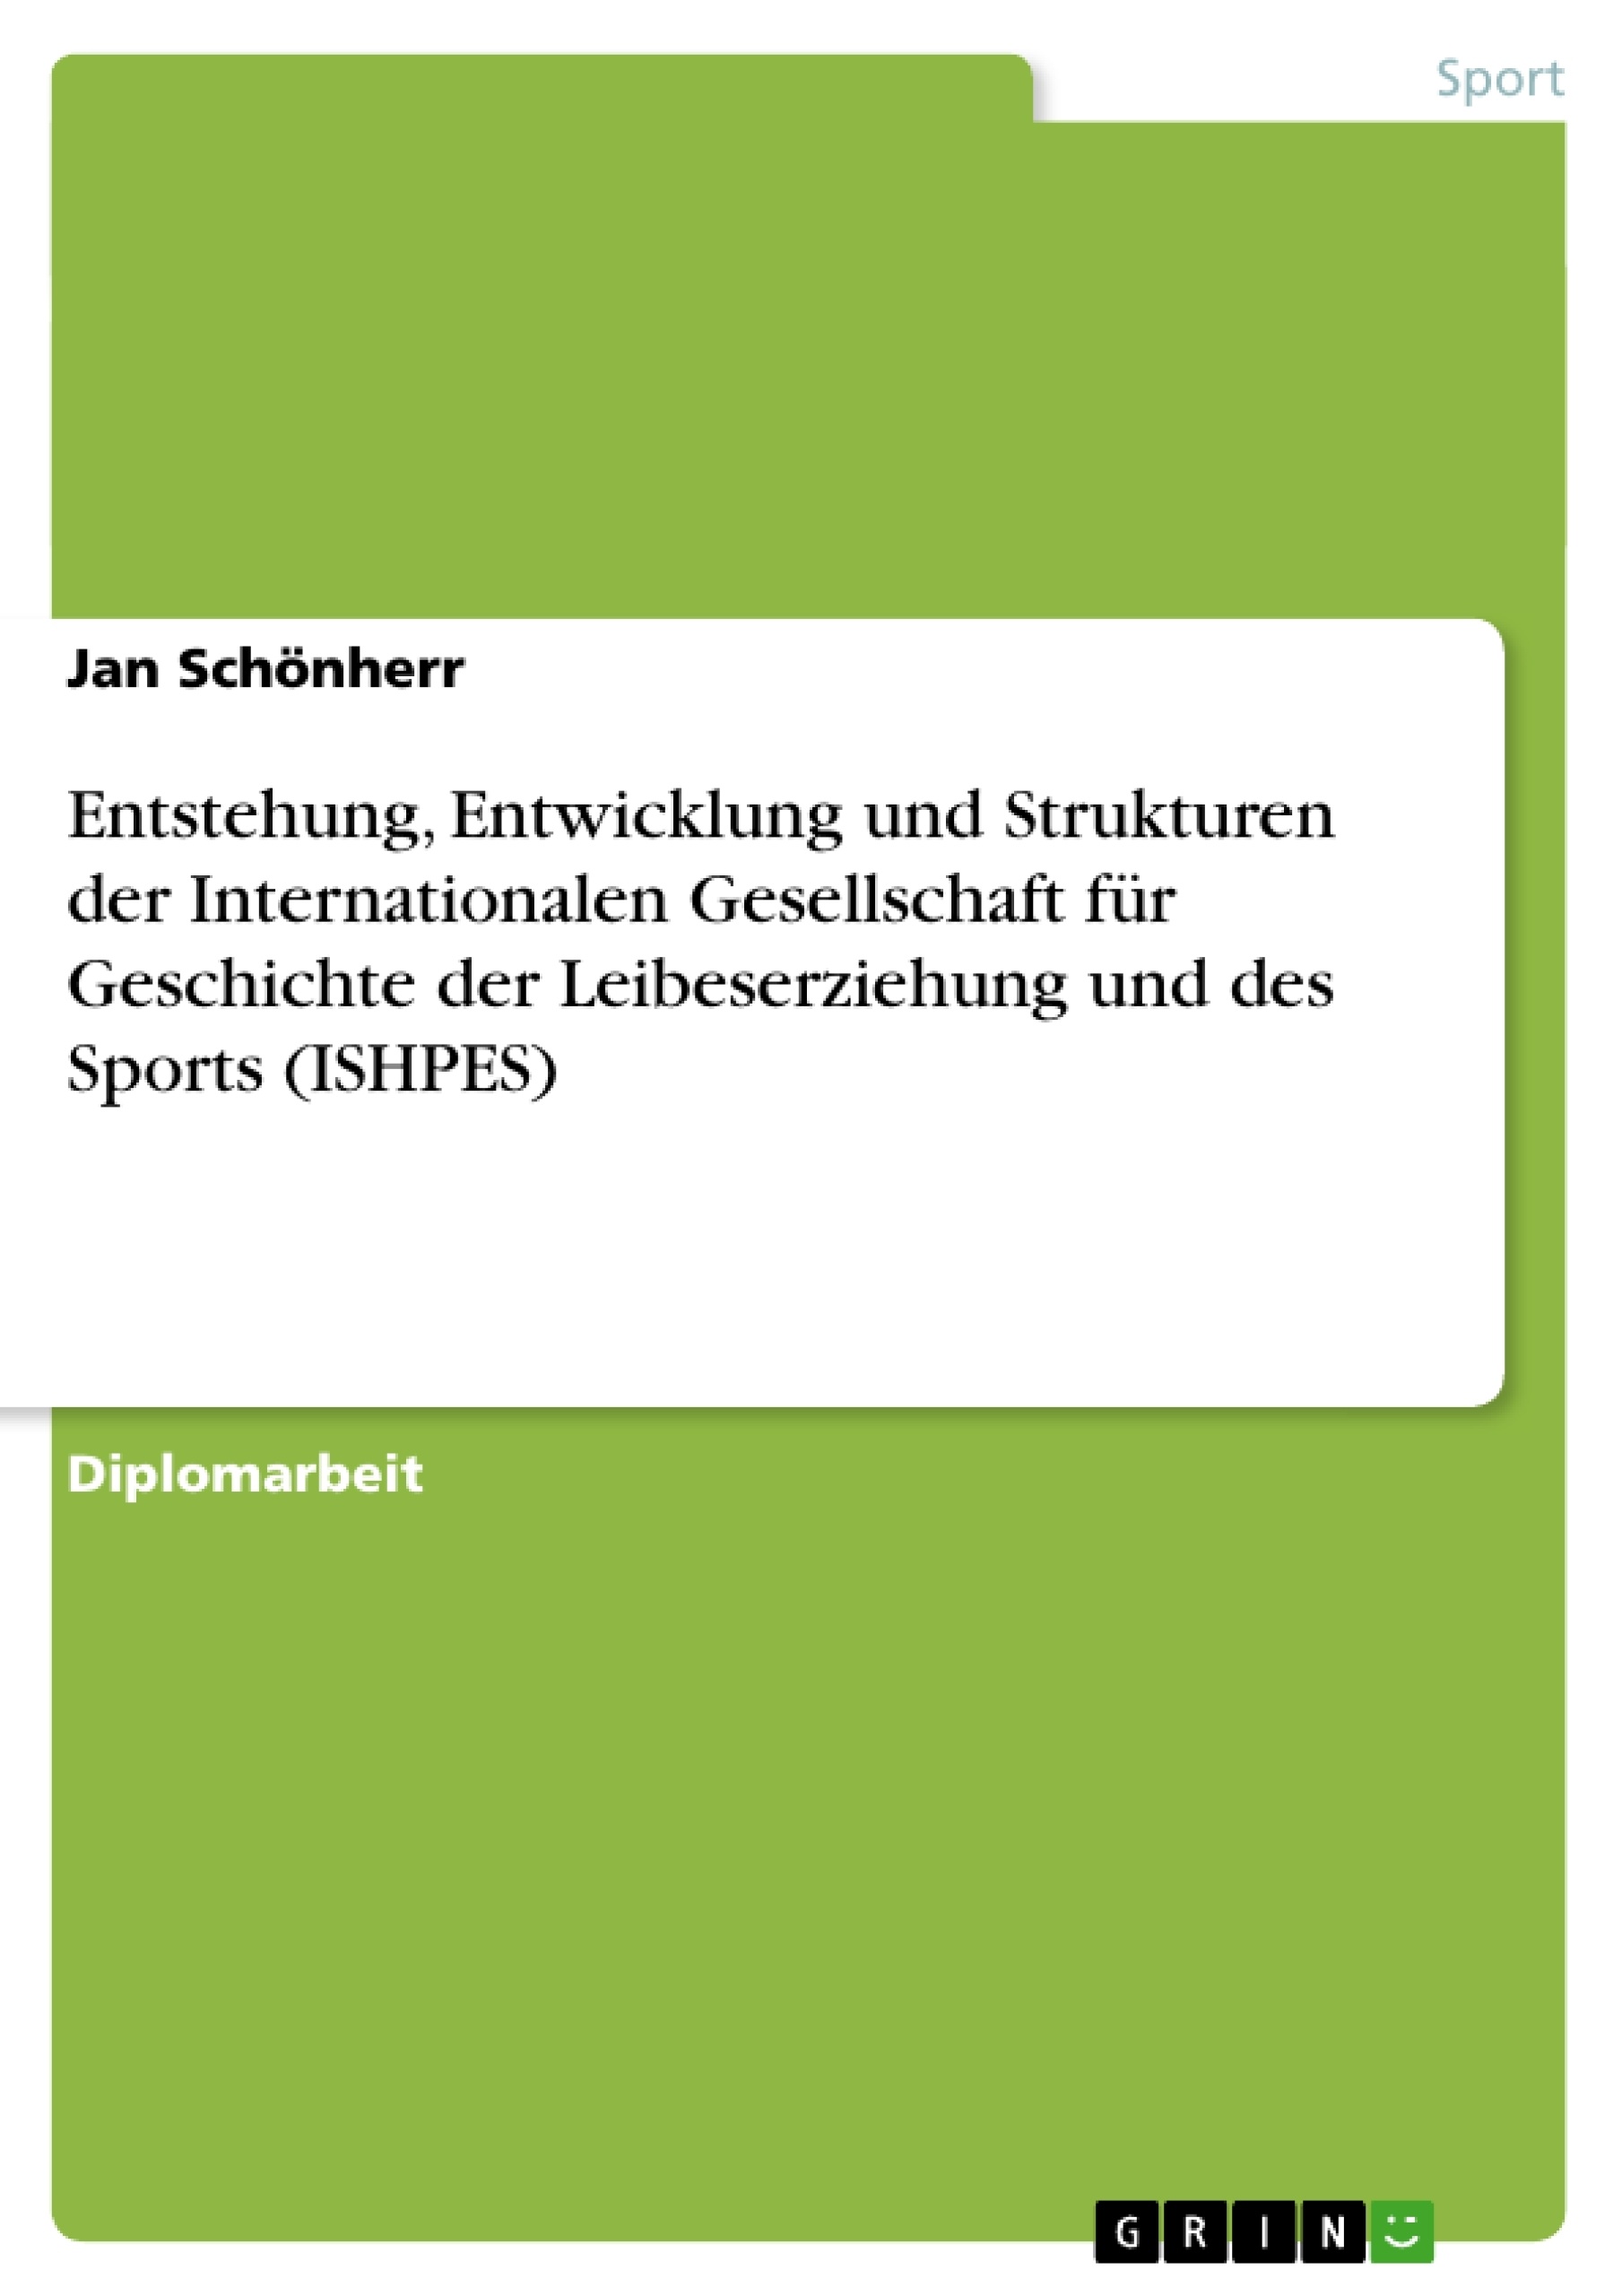 Title: Entstehung, Entwicklung und Strukturen der Internationalen Gesellschaft für Geschichte der Leibeserziehung und des Sports (ISHPES)